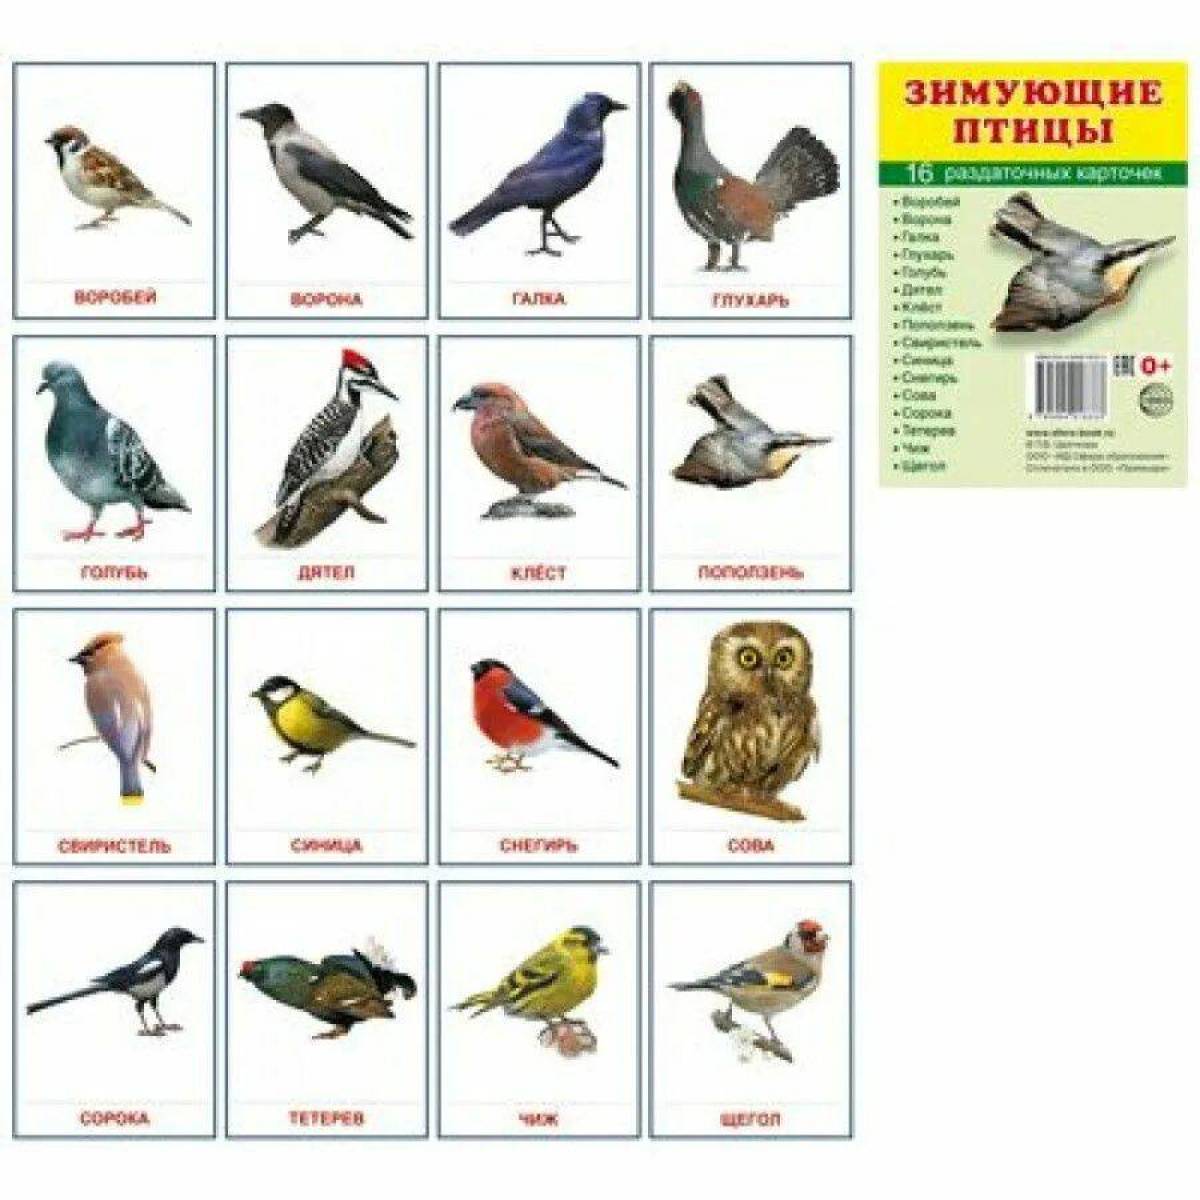 Зимующие птицы с названиями для детей #22